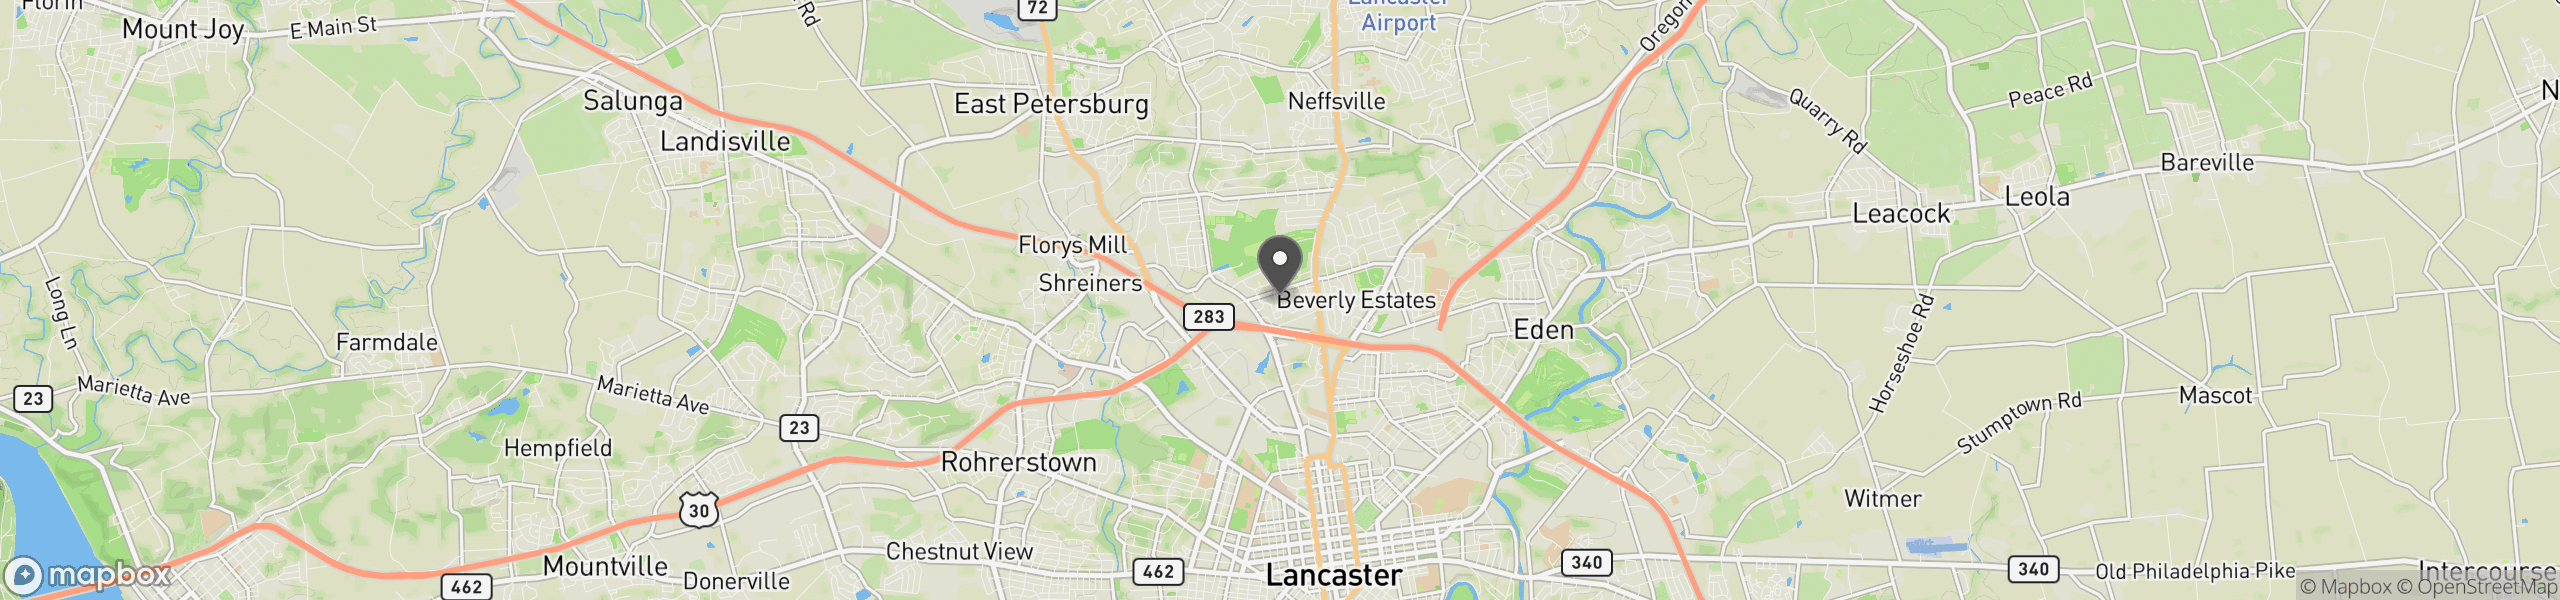 Lancaster, PA 17601